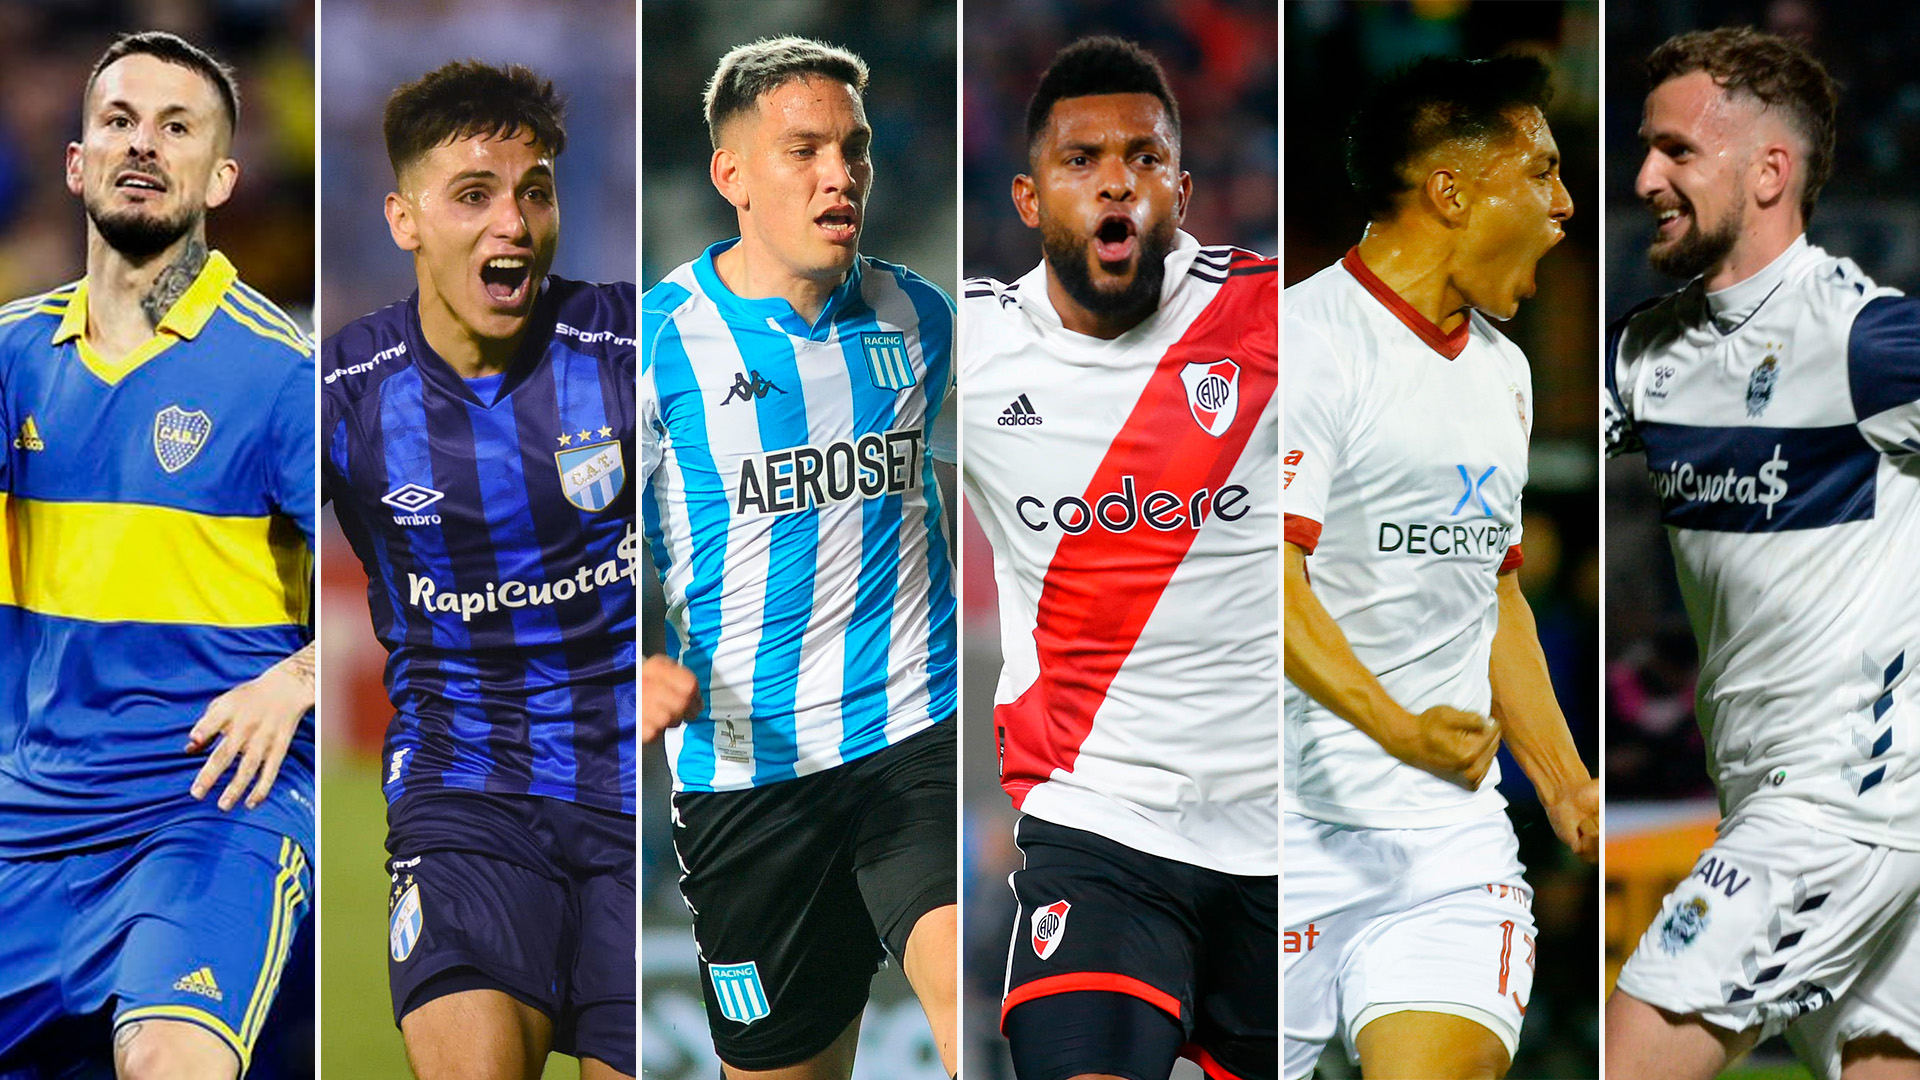 Boca Juniors, Atlético Tucumán, Racing Club, River Plate, Huracán y Gimnasia quieren alzarse con el título